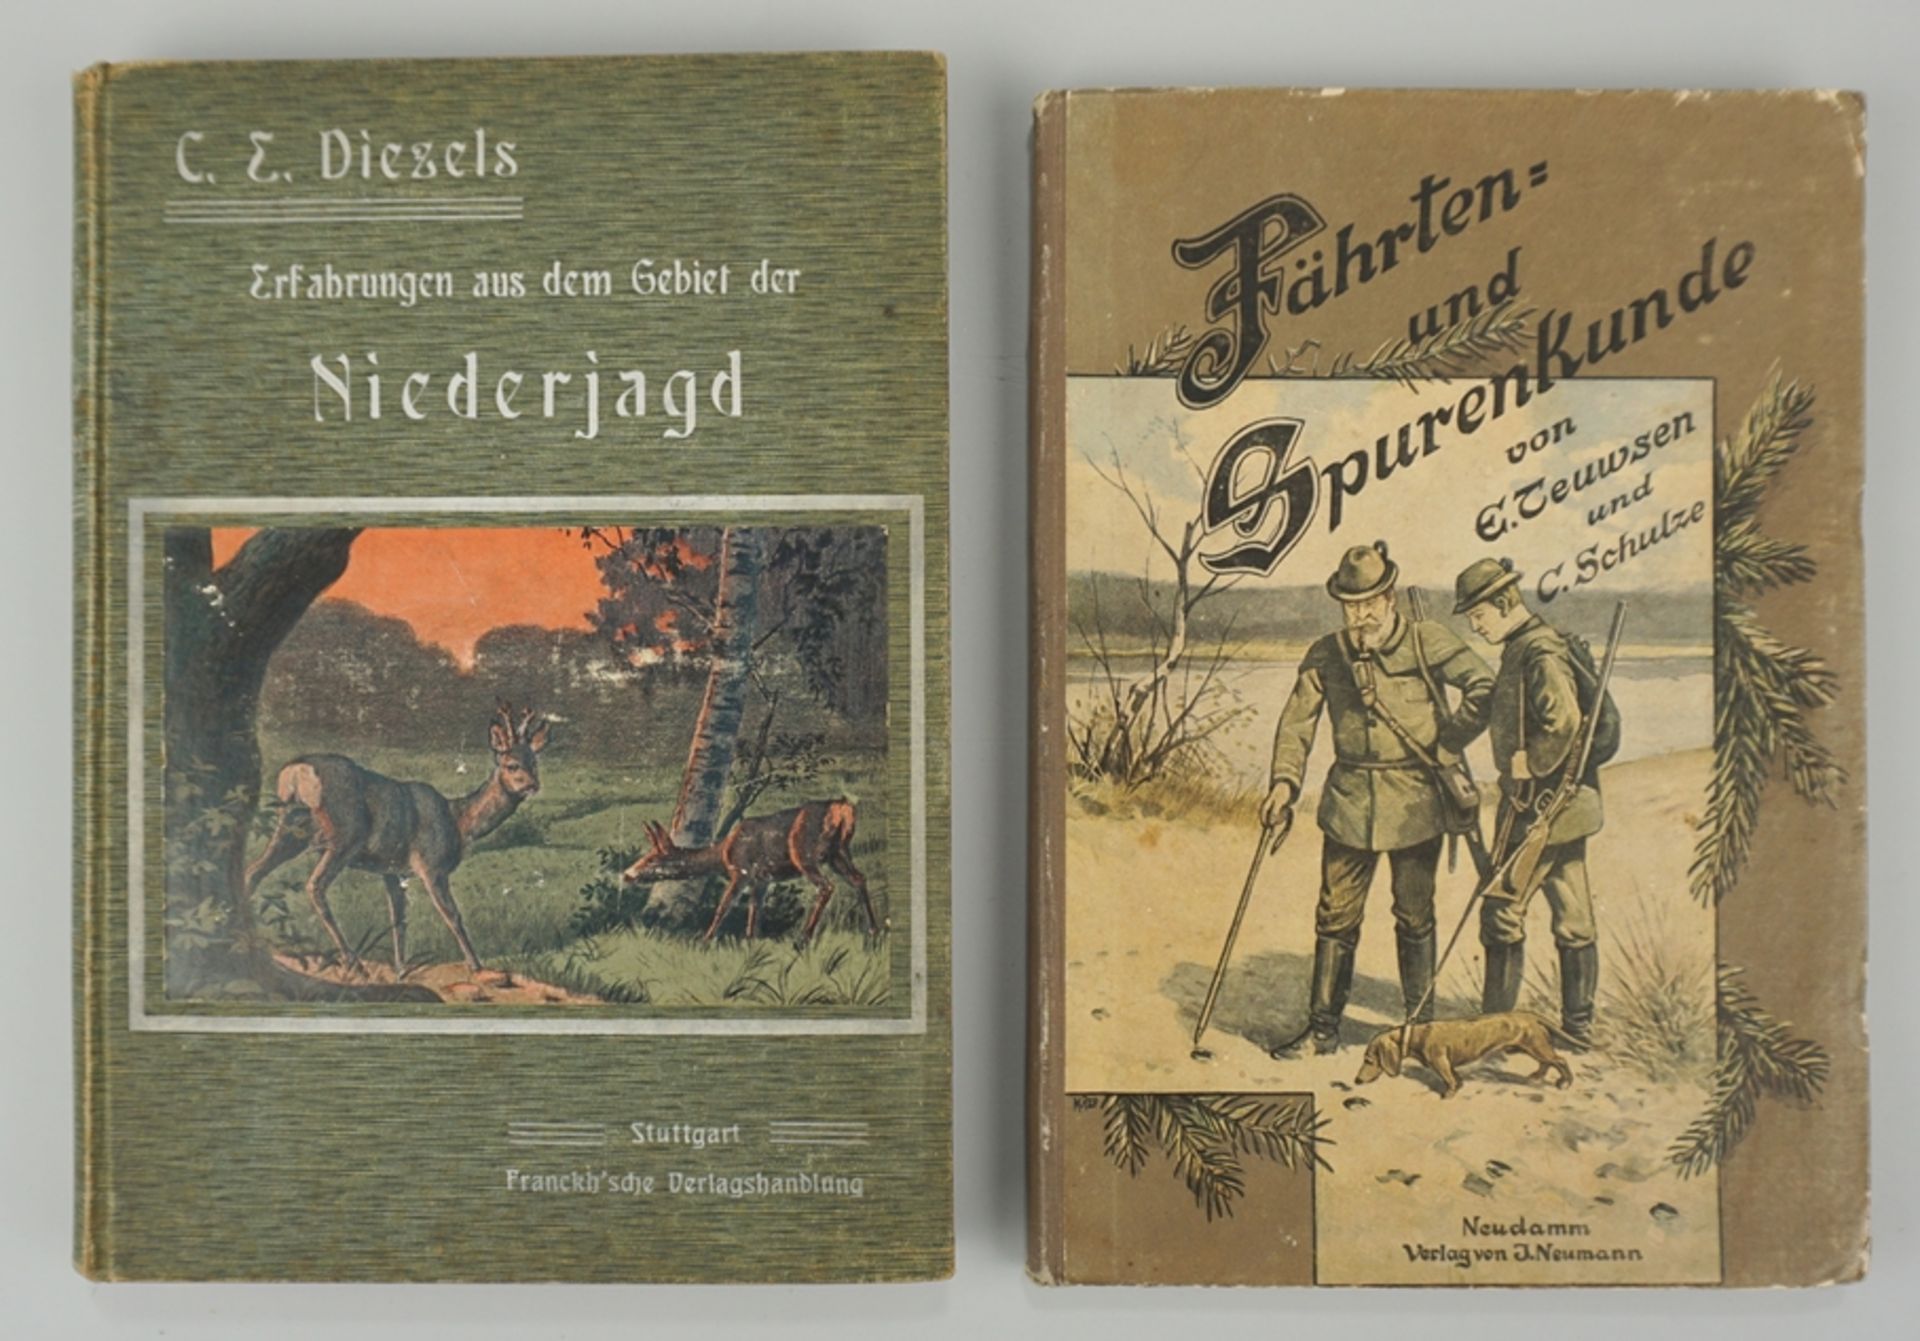 2 Jagdbücher: "Fährten und Spuren", 1901 und "Dietzel´s Erfahrungen aus dem Gebiete der Niederjagd"